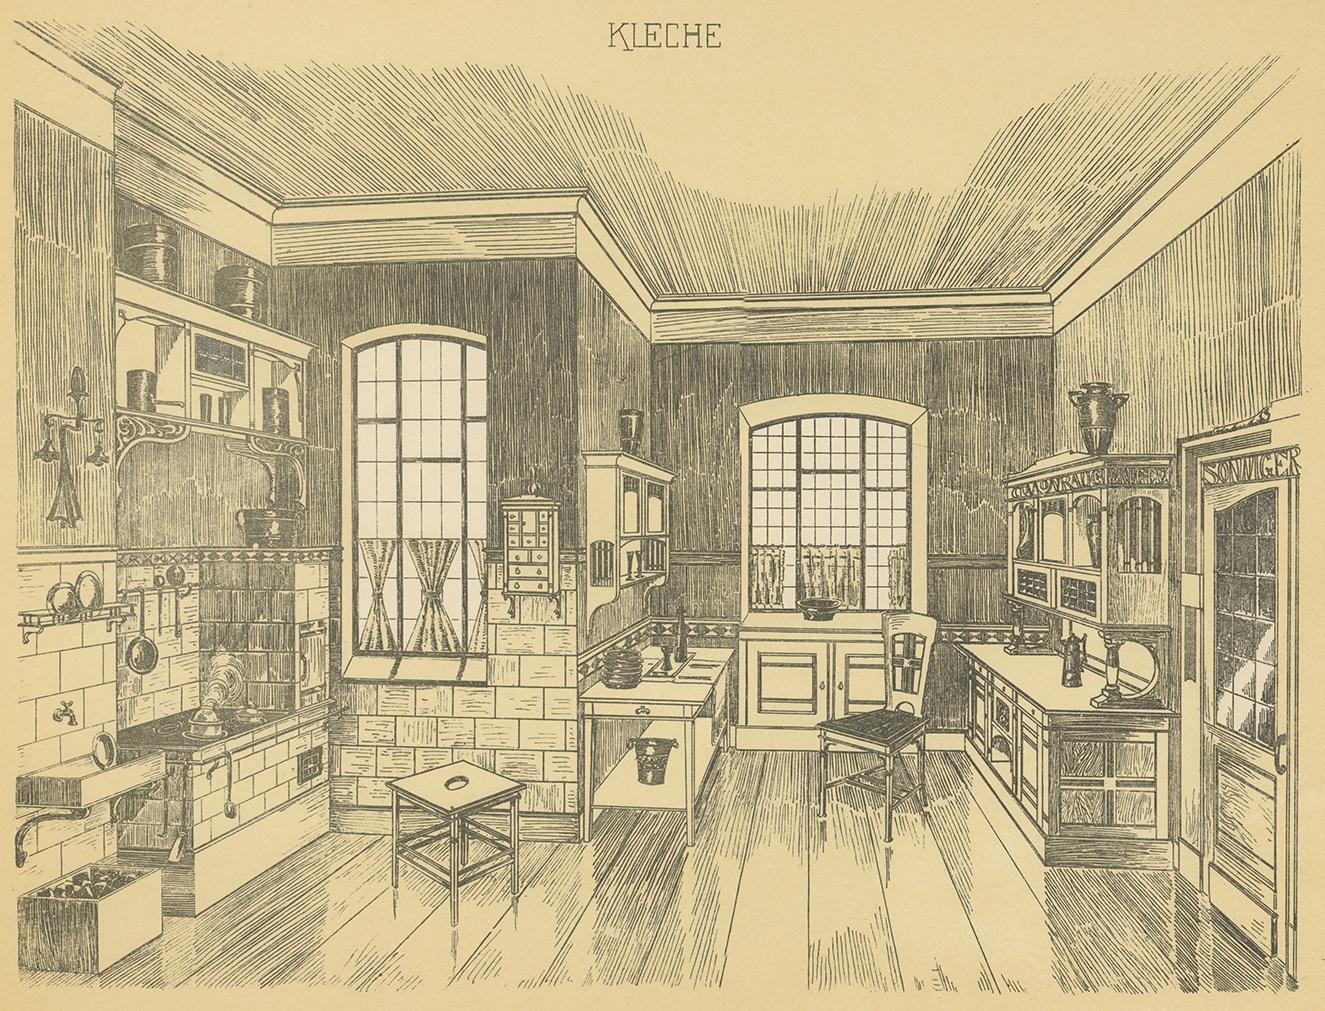 1910s kitchen